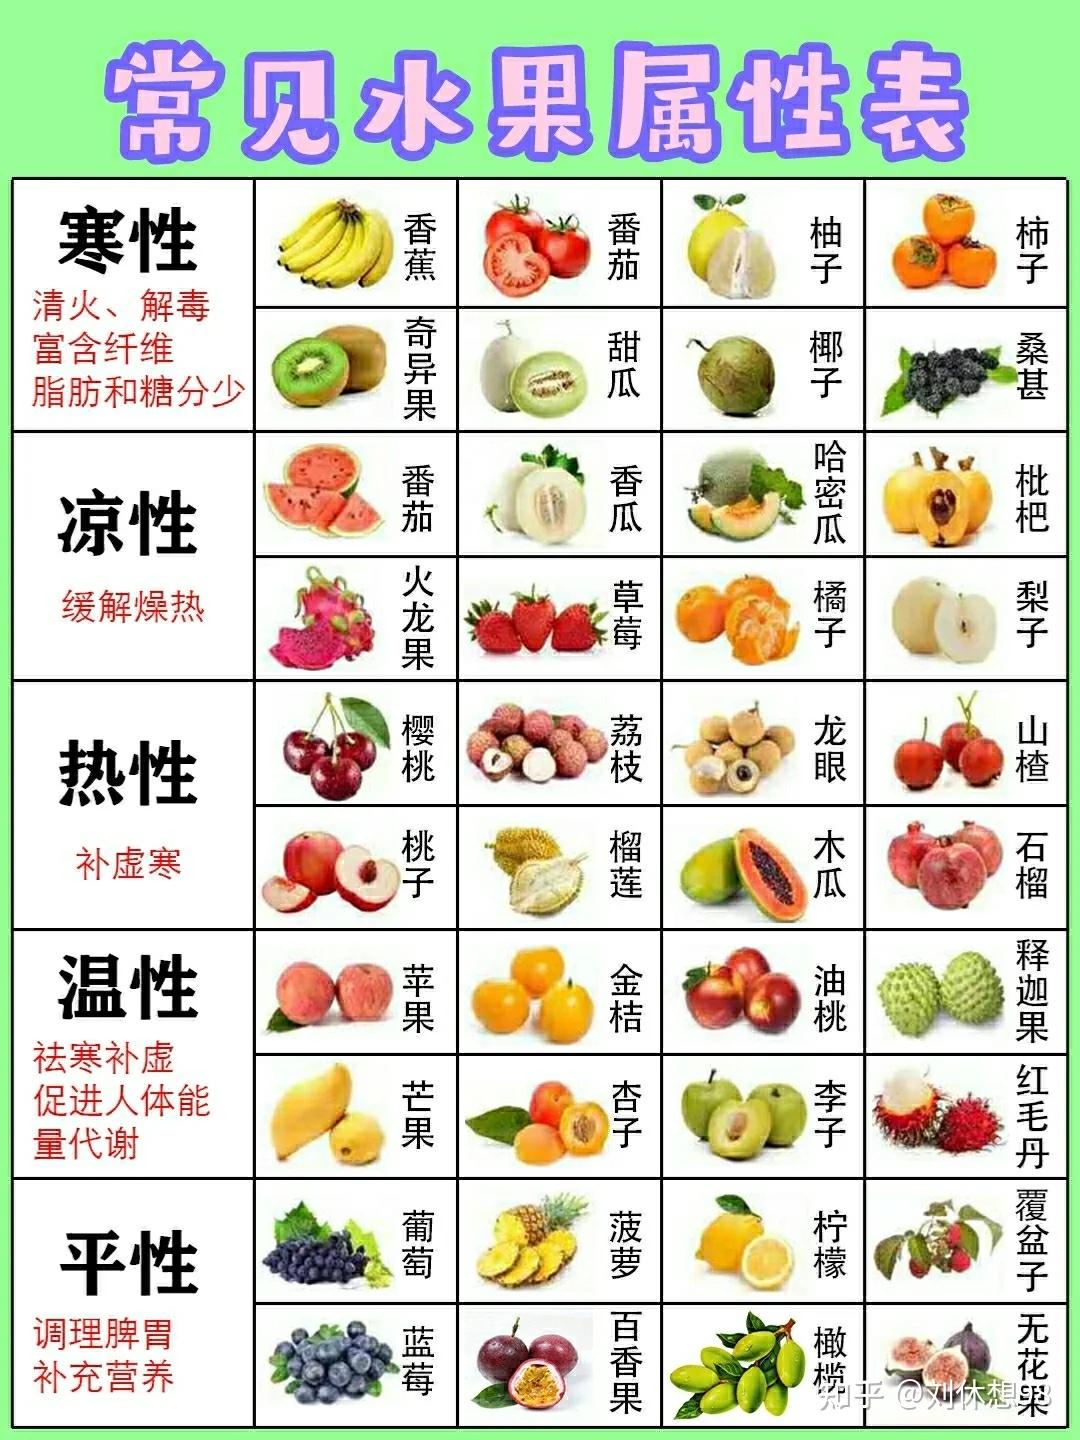 如女生生理期就要减少寒凉性水果摄入,体寒就可以通过补充温热性水果